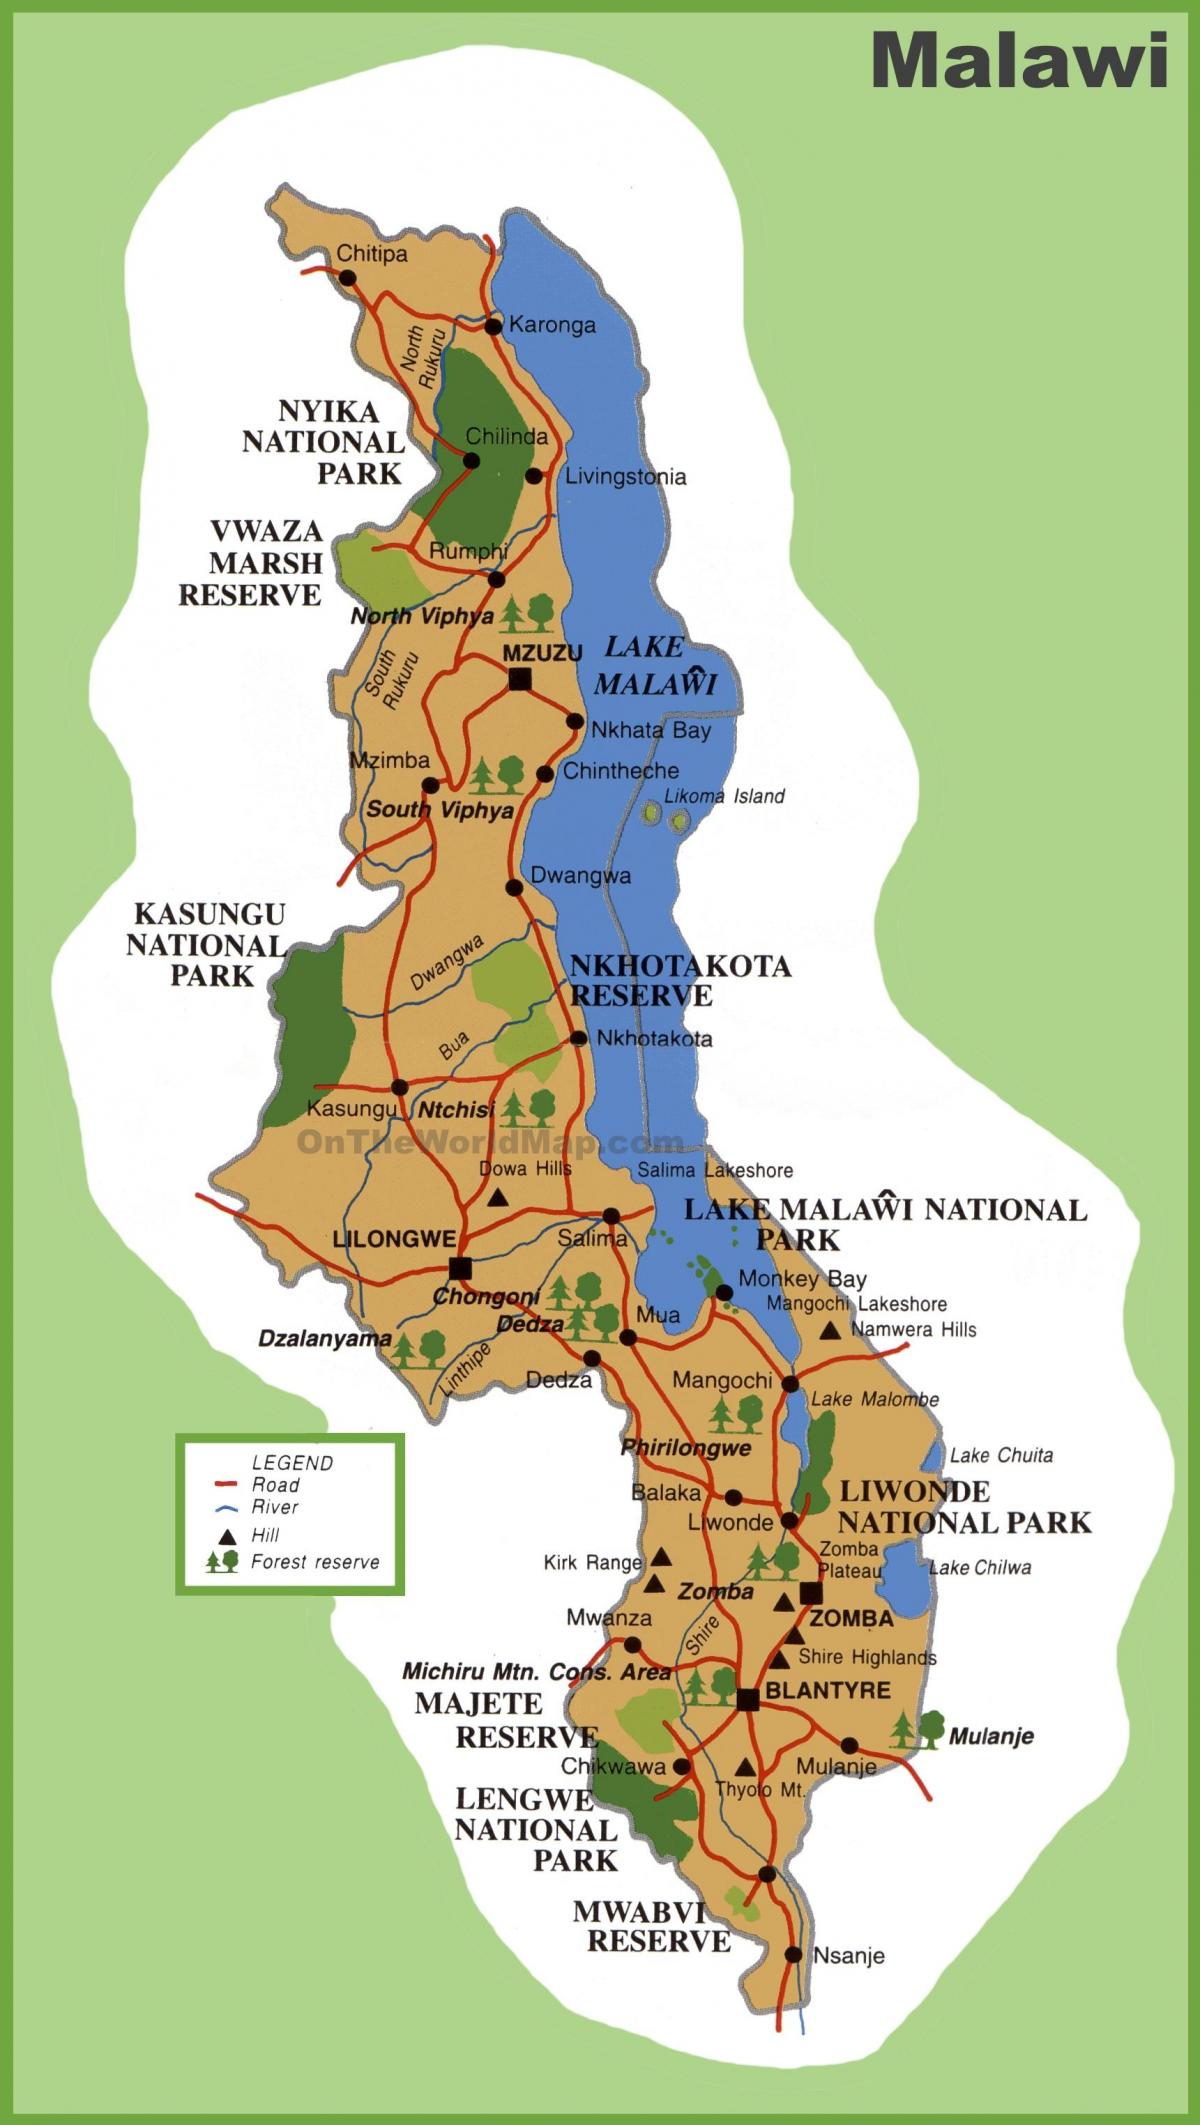 خريطة ملاوي والدول المحيطة